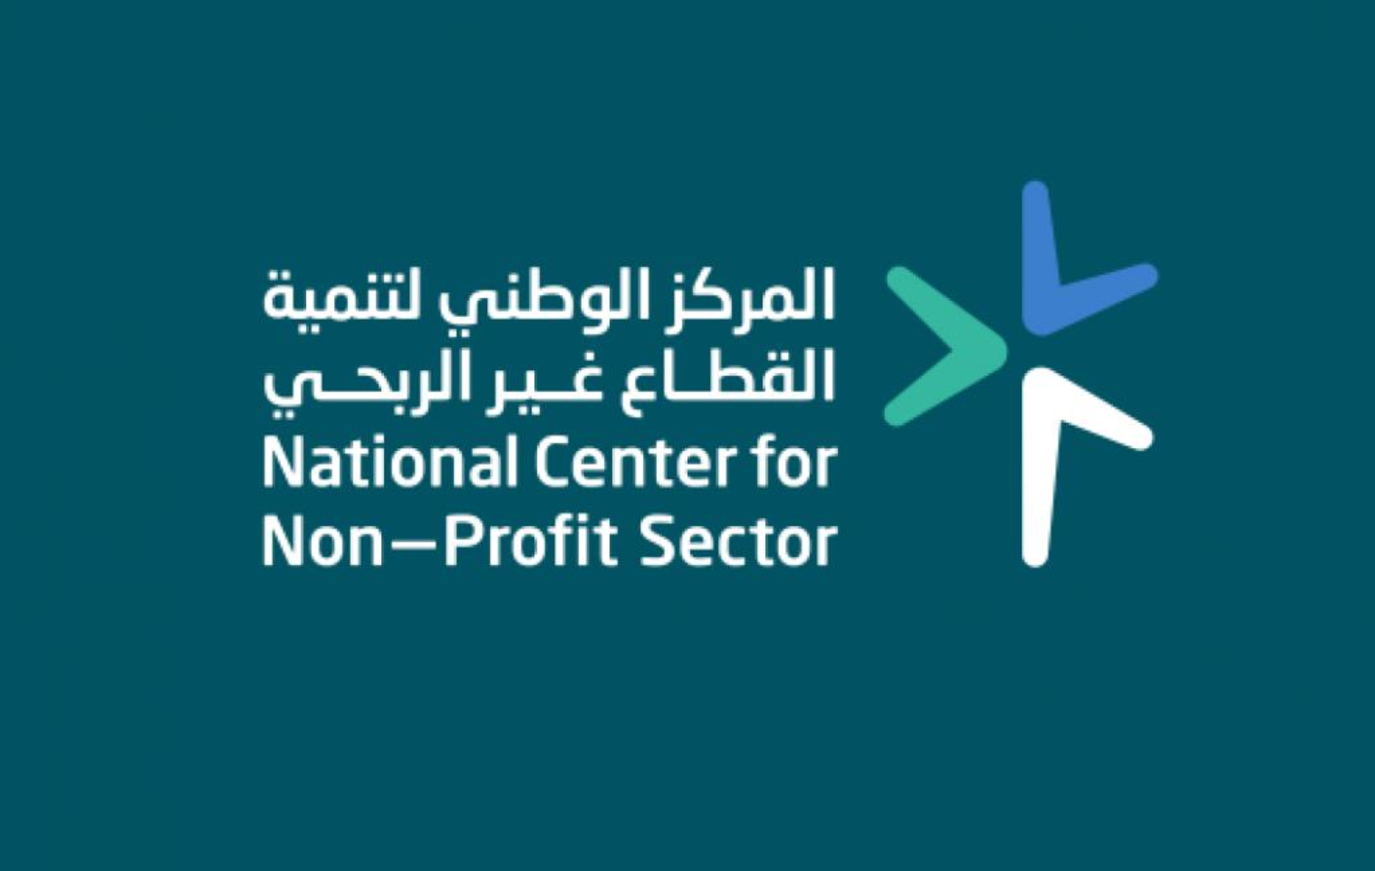 المركز الوطني لتنمية القطاع غير الربحي - وظائف إدارية بالمركز الوطني لتنمية القطاع غير الربحي لحملة البكالوريوس